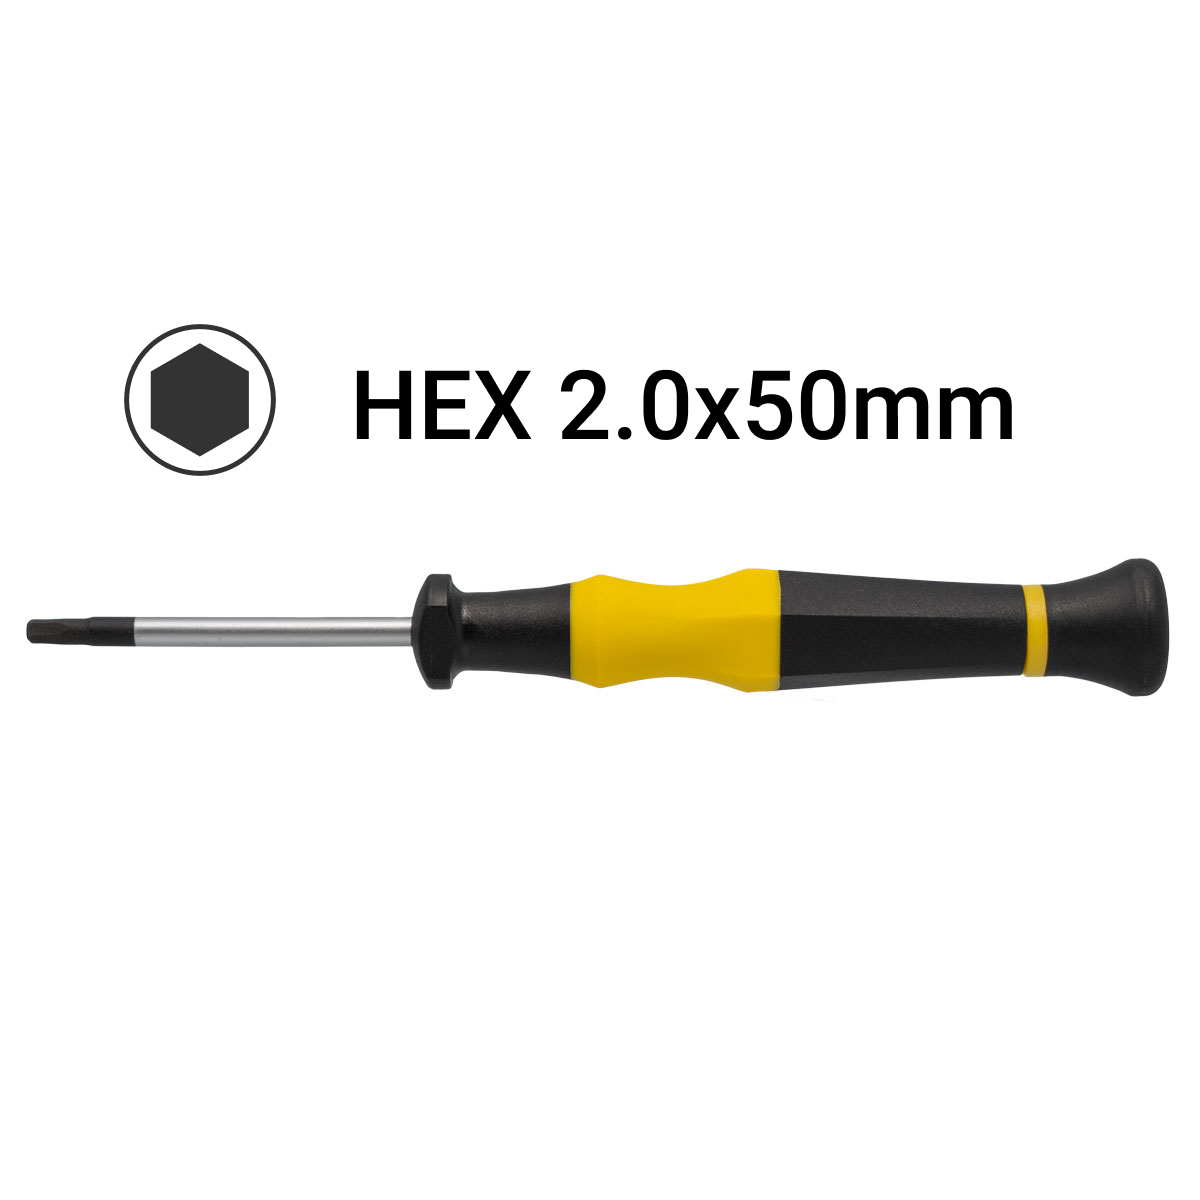 H2.0x50mm Hex Precision Screwdriver